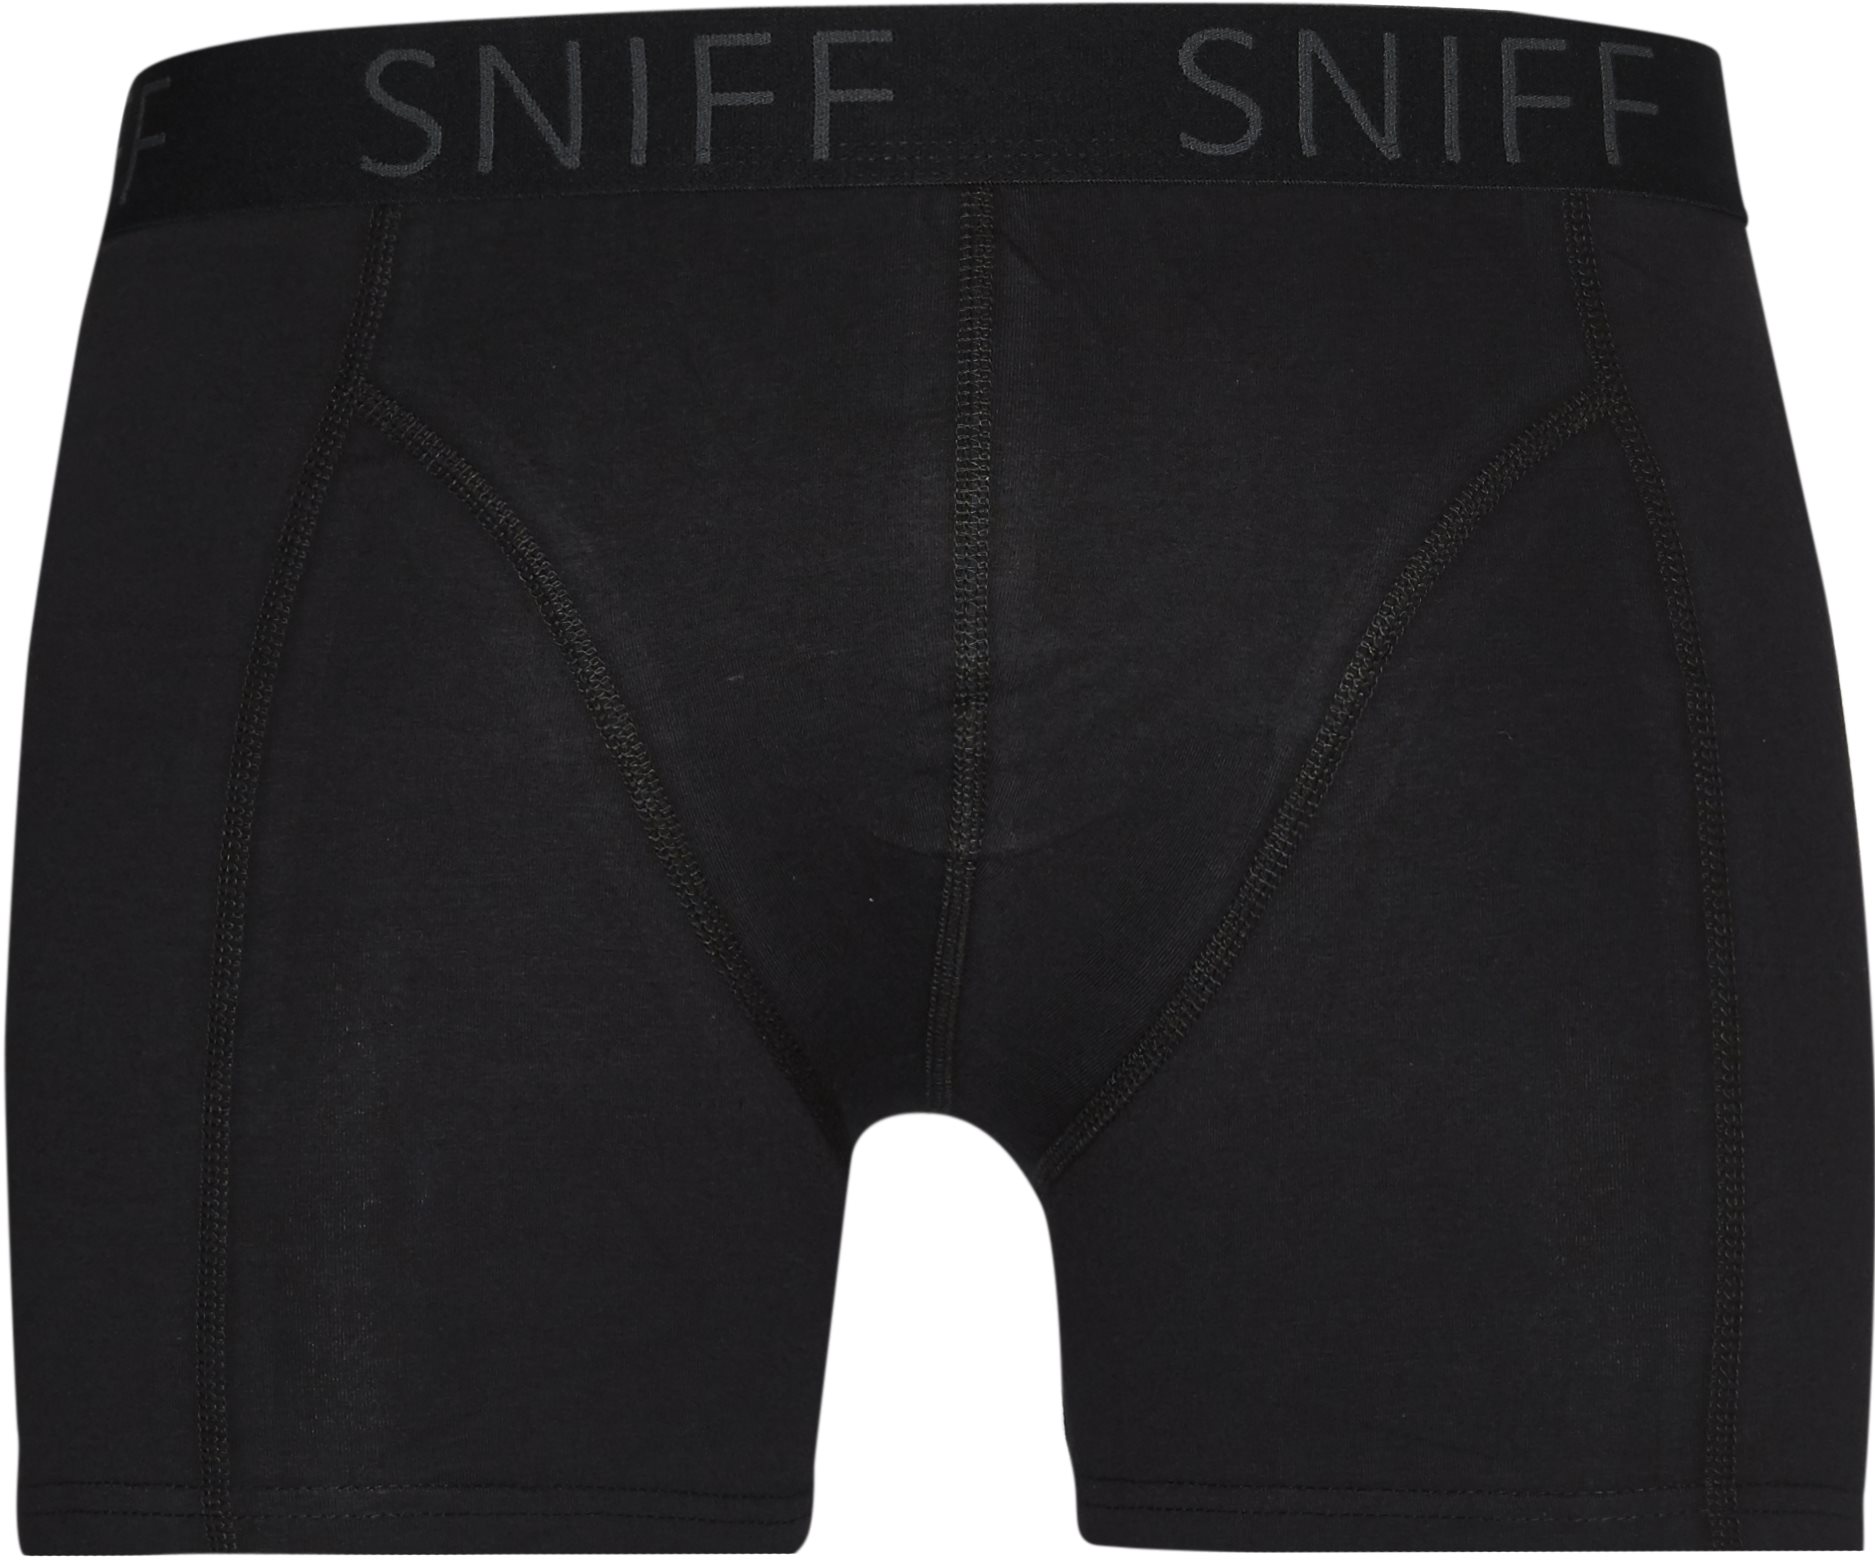 Sniff Underkläder TIGHTS 88010 Svart